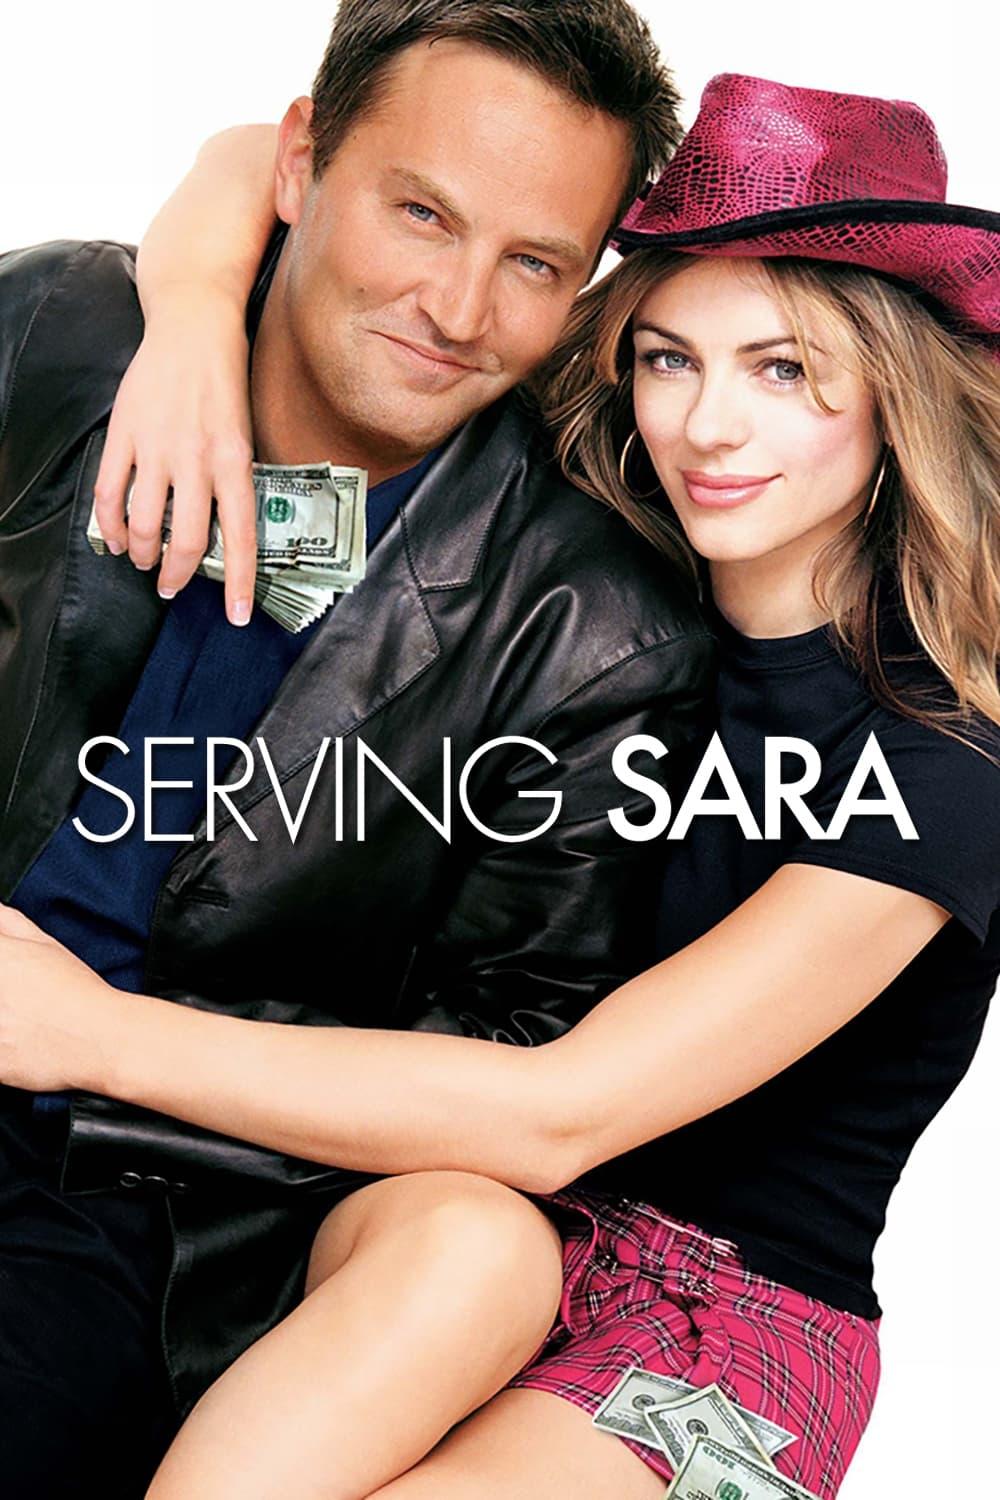 Serving Sara poster